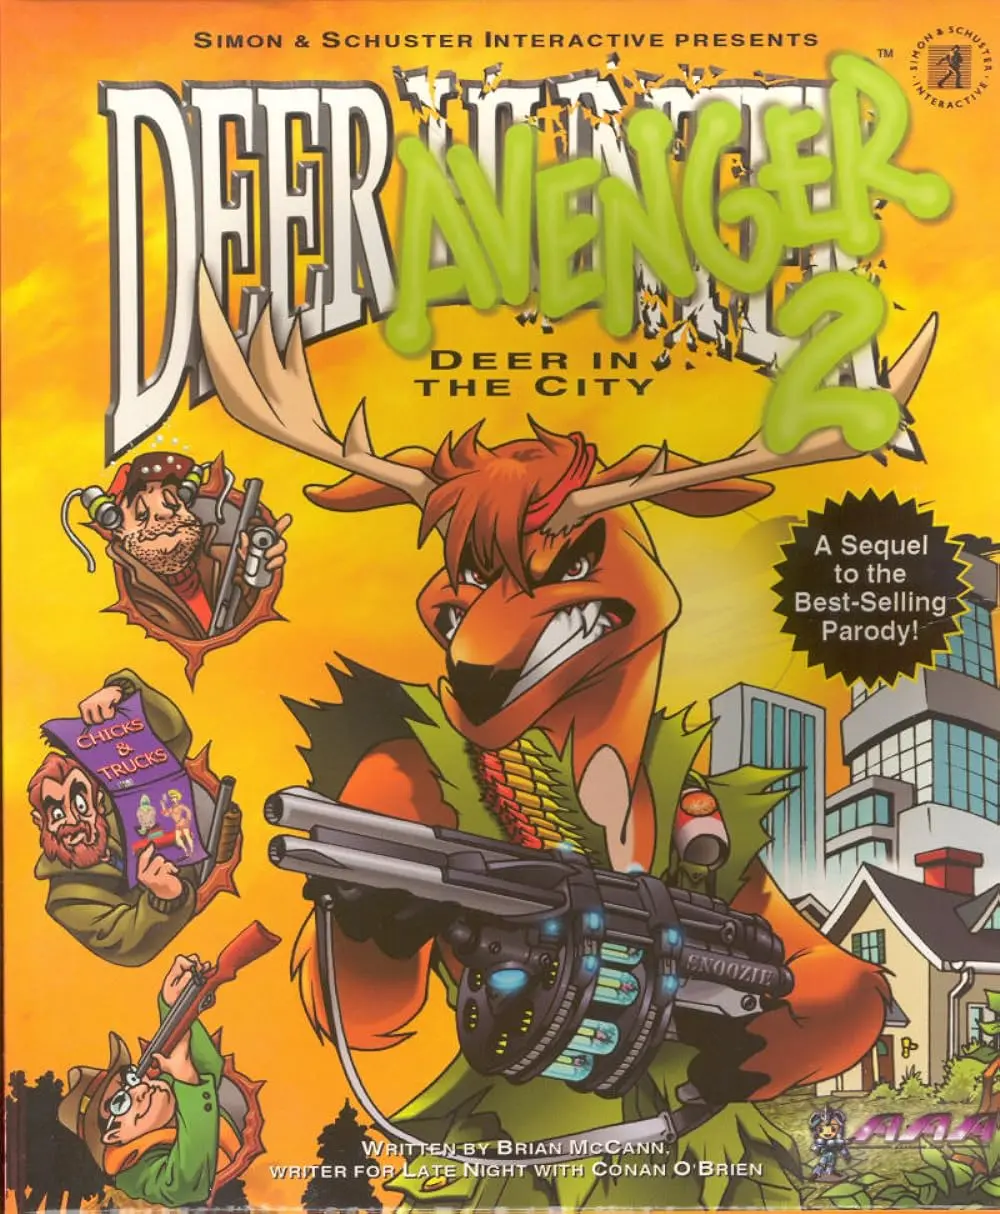 Deer Avenger 2 Deer in the City (1999)
